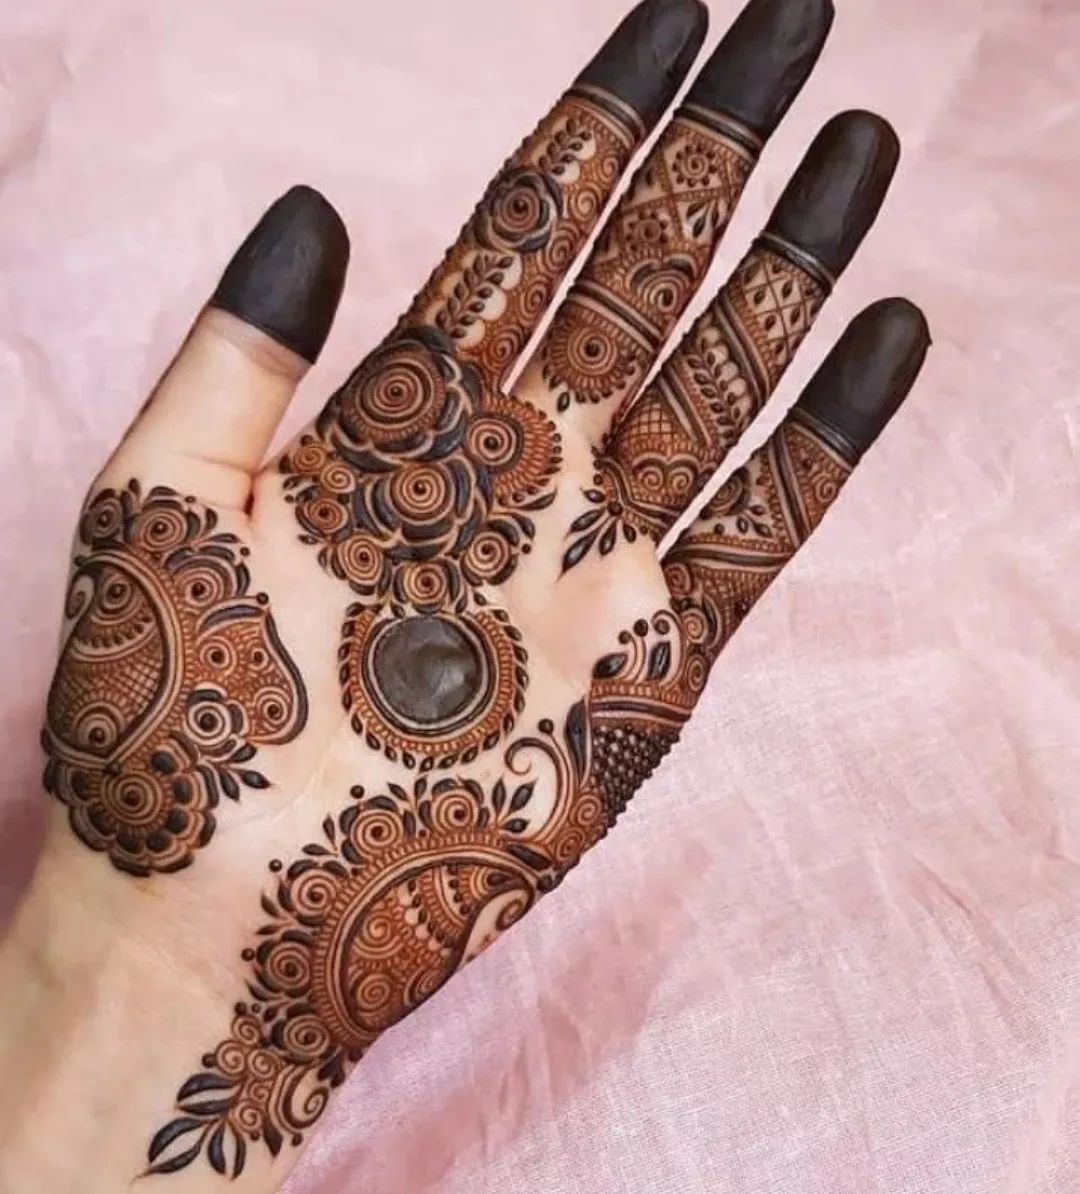 करवाचौथ पर इन ट्रेंडिंग मेहंदी डिजाइन को बनवाने की होड़, थीम के साथ सजाएं  हाथ, मेकर्स भी दे रहे ऑफर - Trending mehndi designs for Karwa Chauth  decorate hands with theme makers